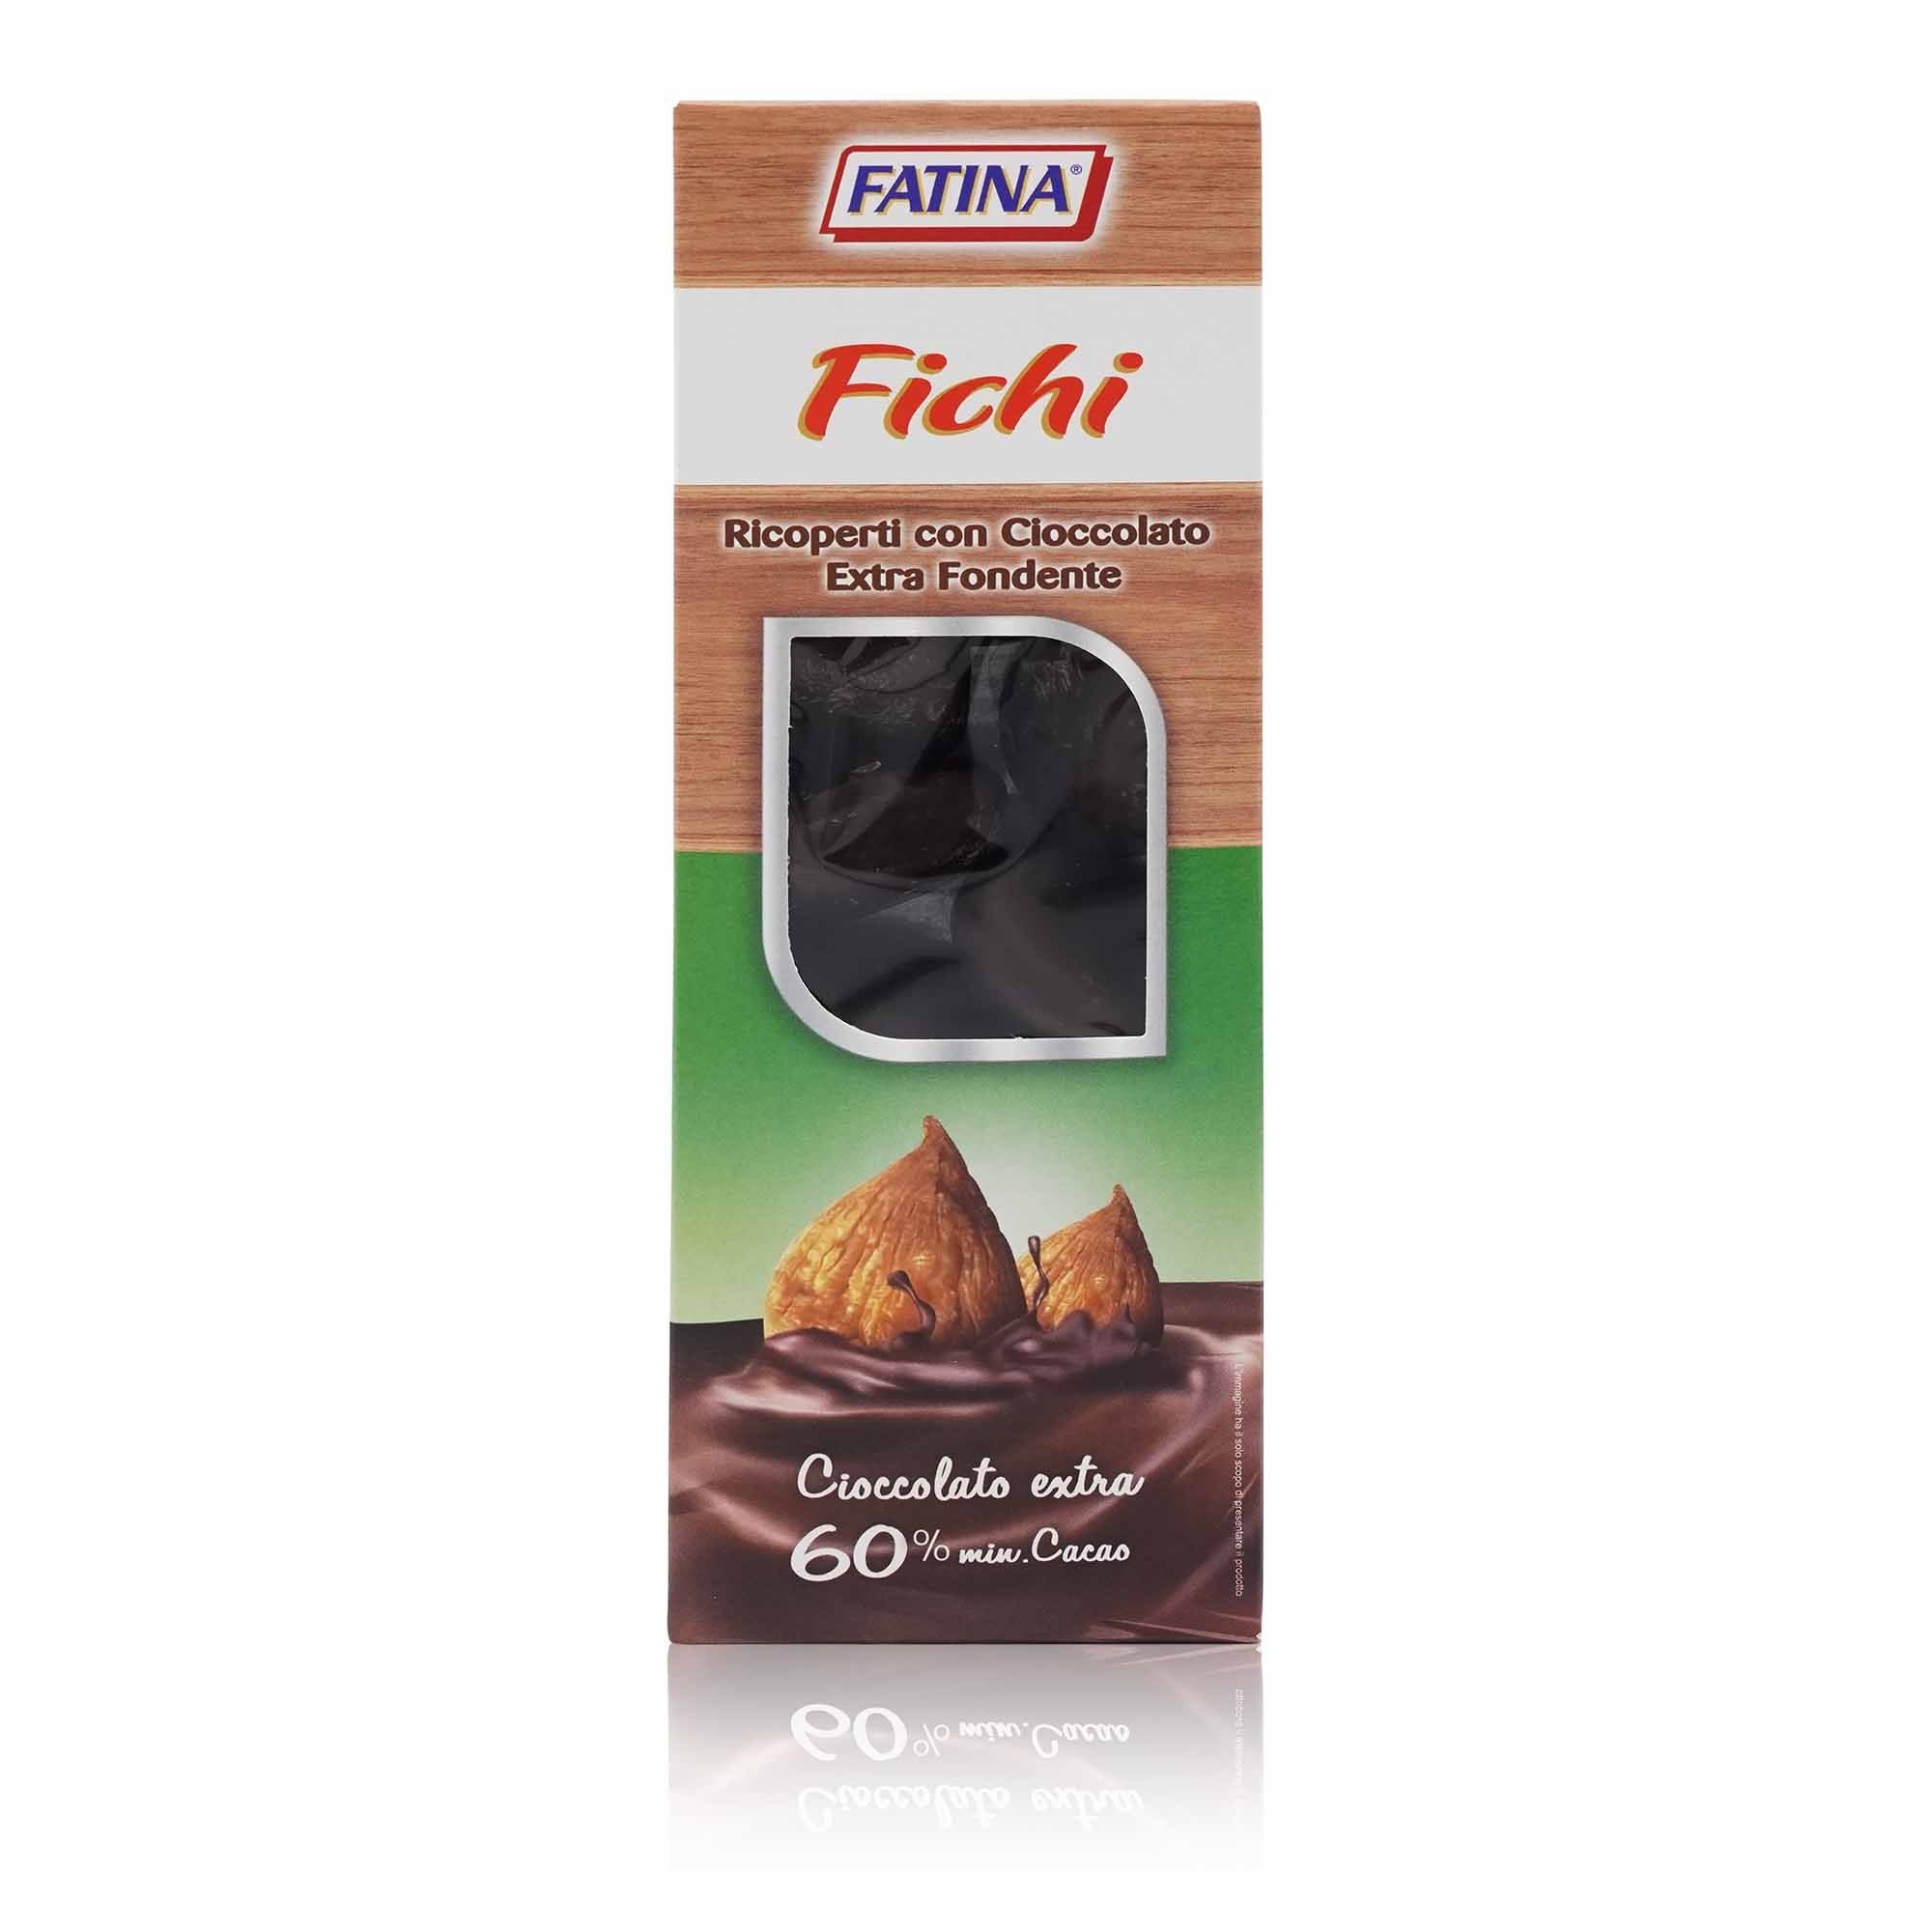 FATINA Fichi ricoperti di cioccolato – Feigen mit Zartbitterschokolade - 0,180kg